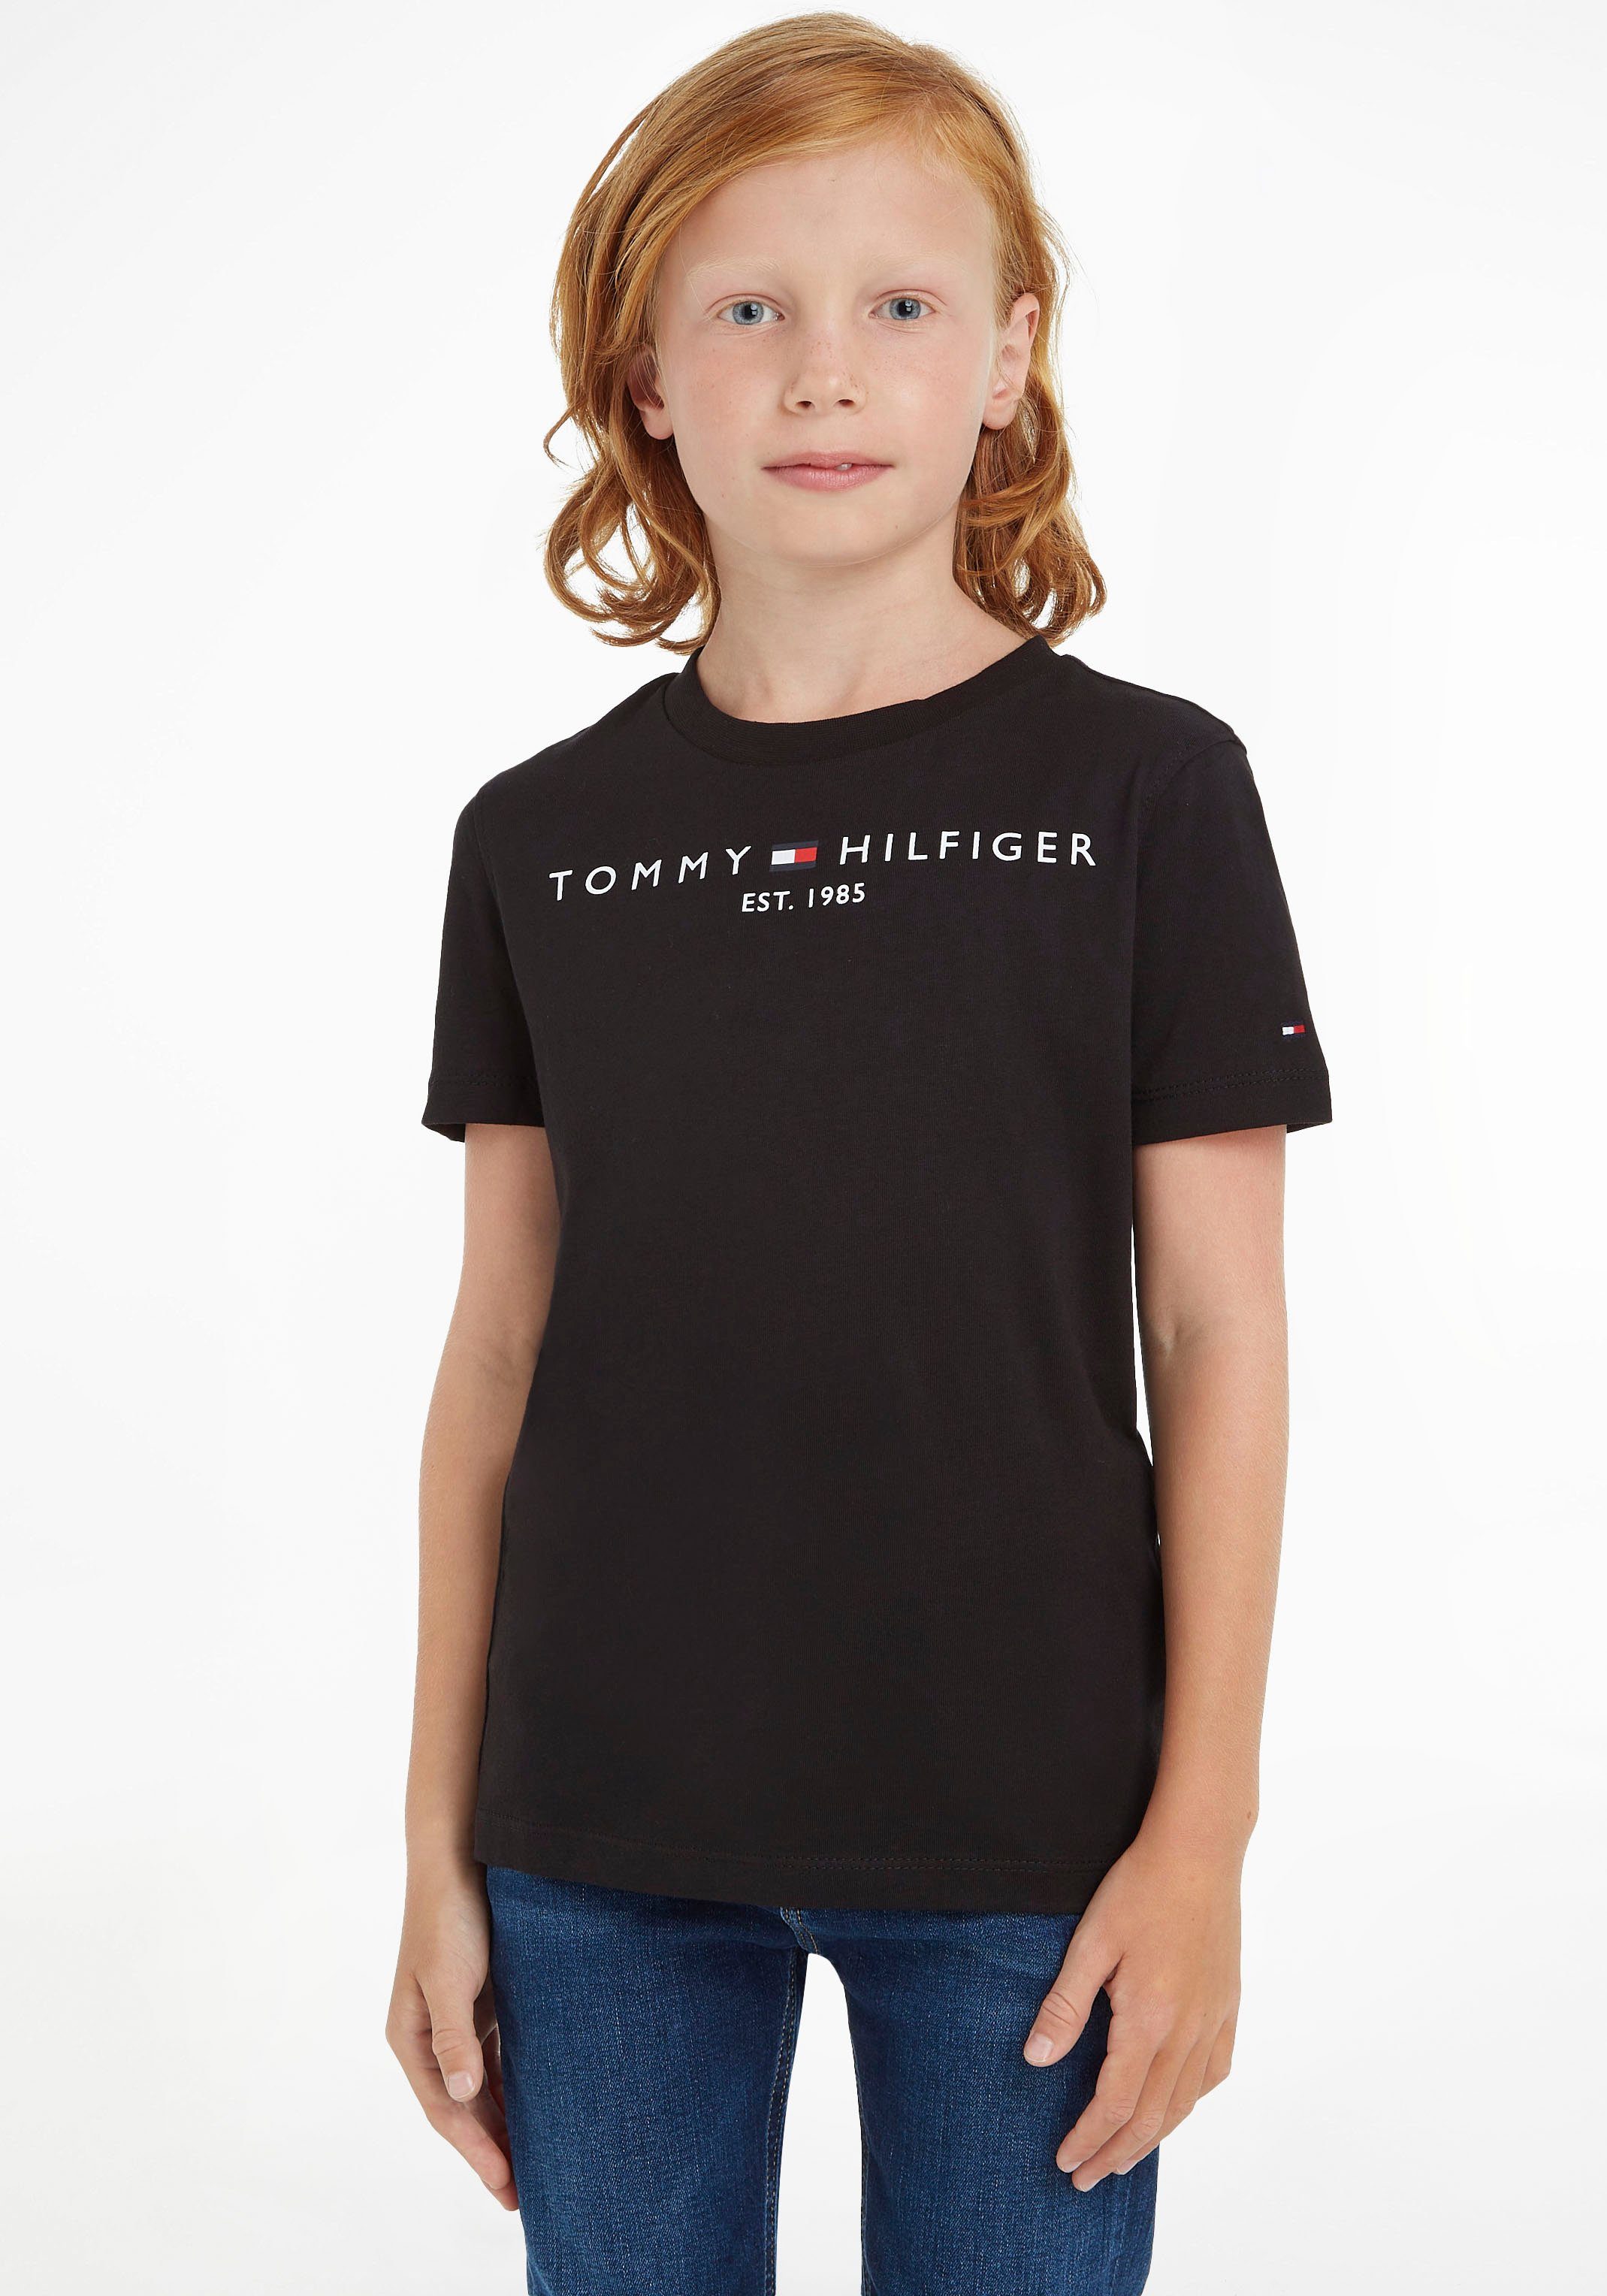 Kinder Hilfiger Tommy Jungen MiniMe,für T-Shirt Kids TEE ESSENTIAL Junior